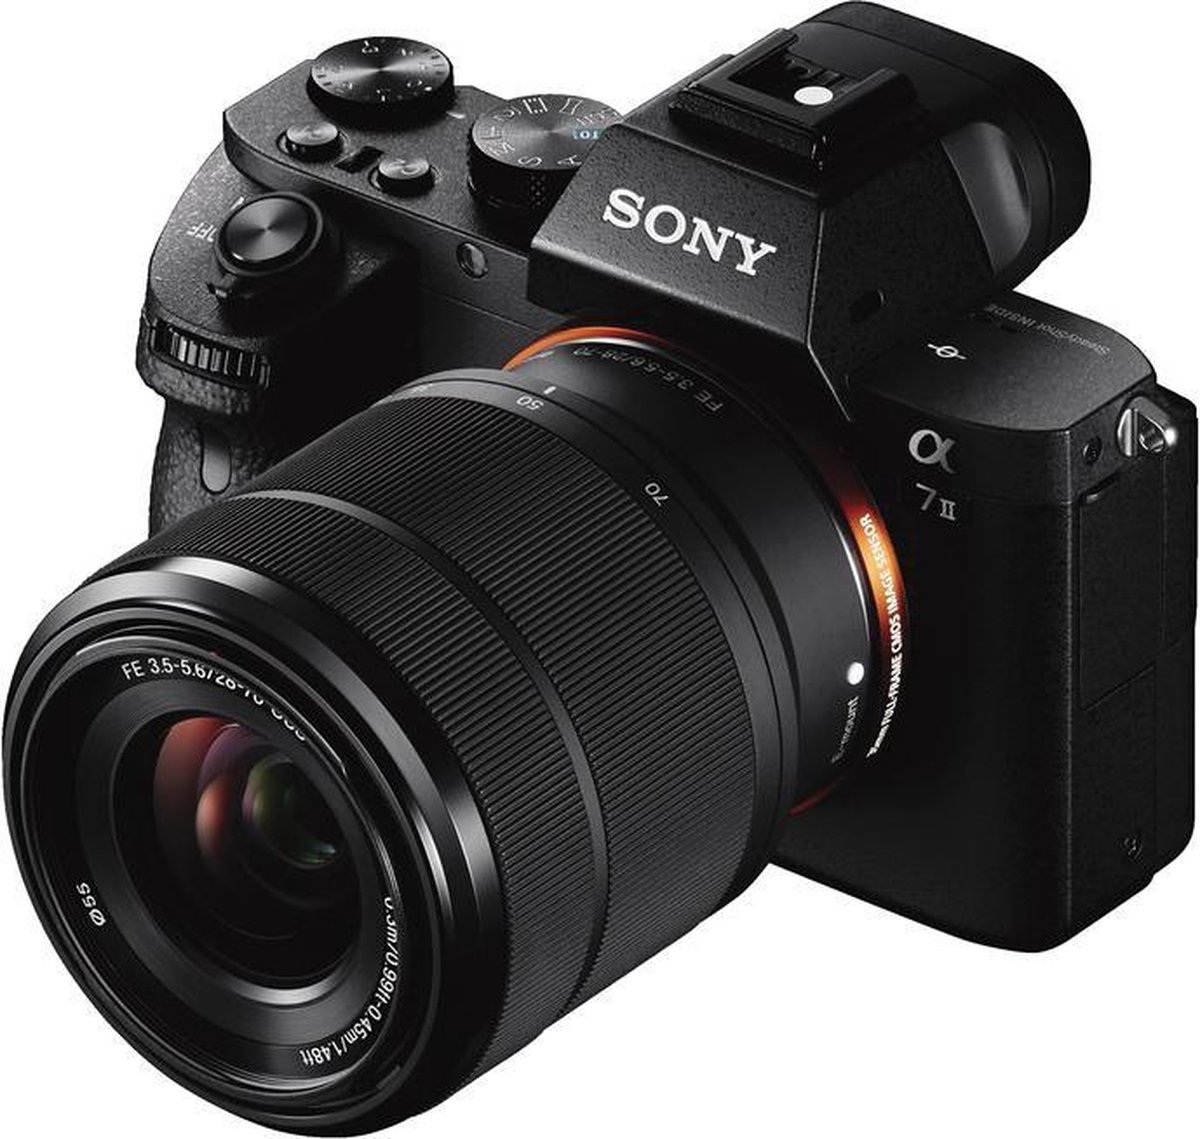 Sony A7 II + FE 28-70mm f/3.5-5.6 OSS